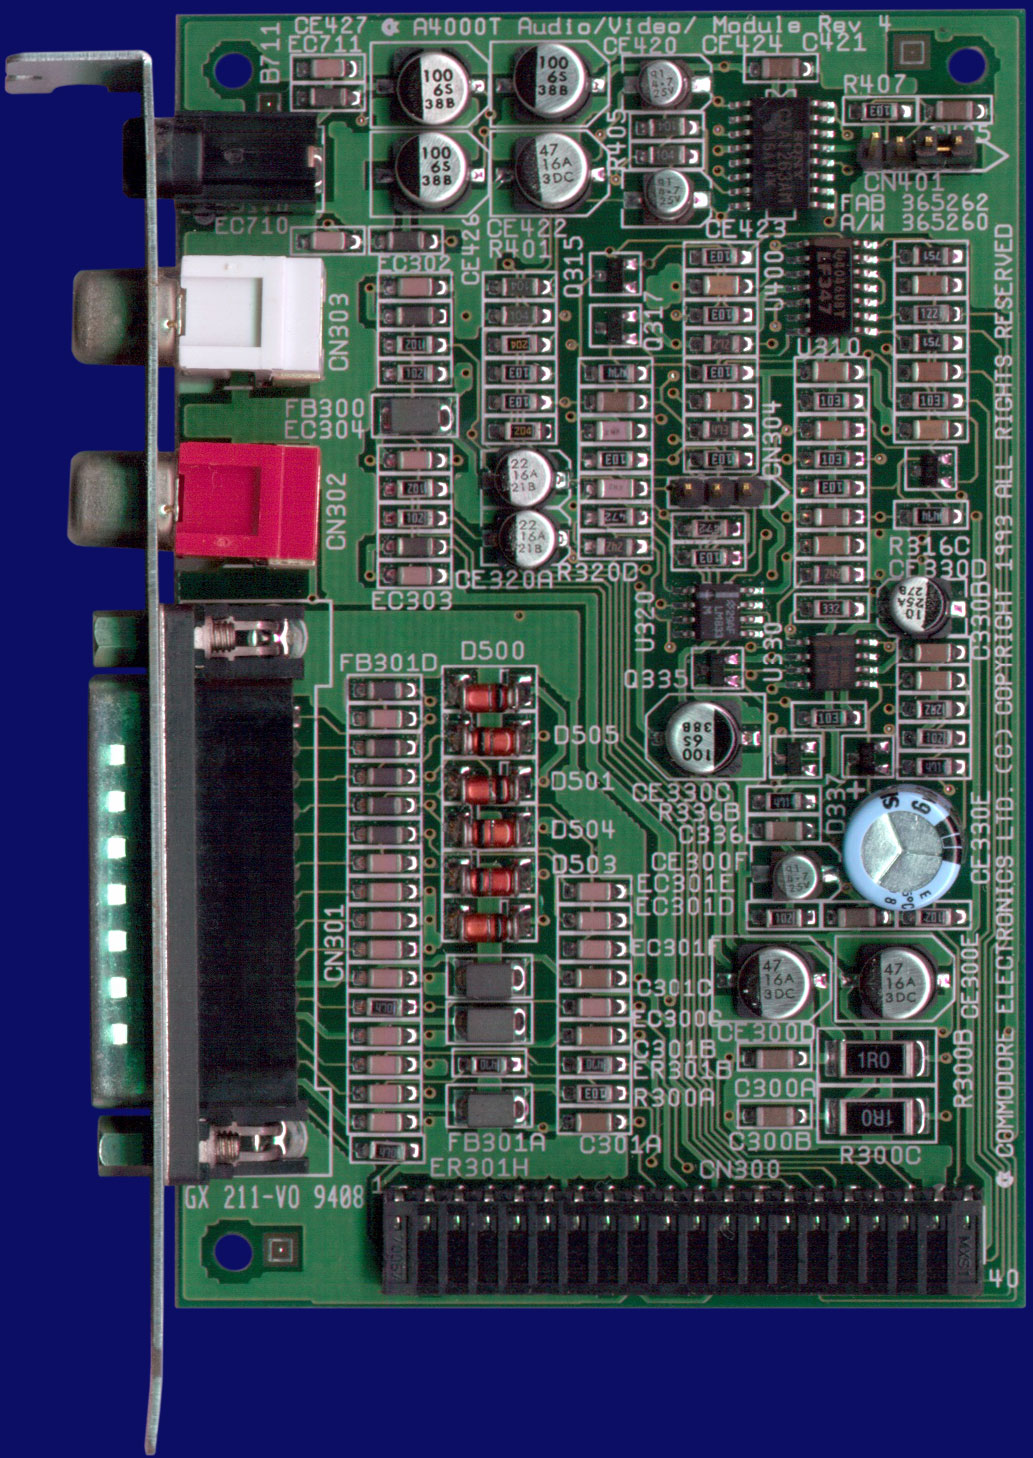 Commodore Amiga 4000T - Audio / Video module, front side